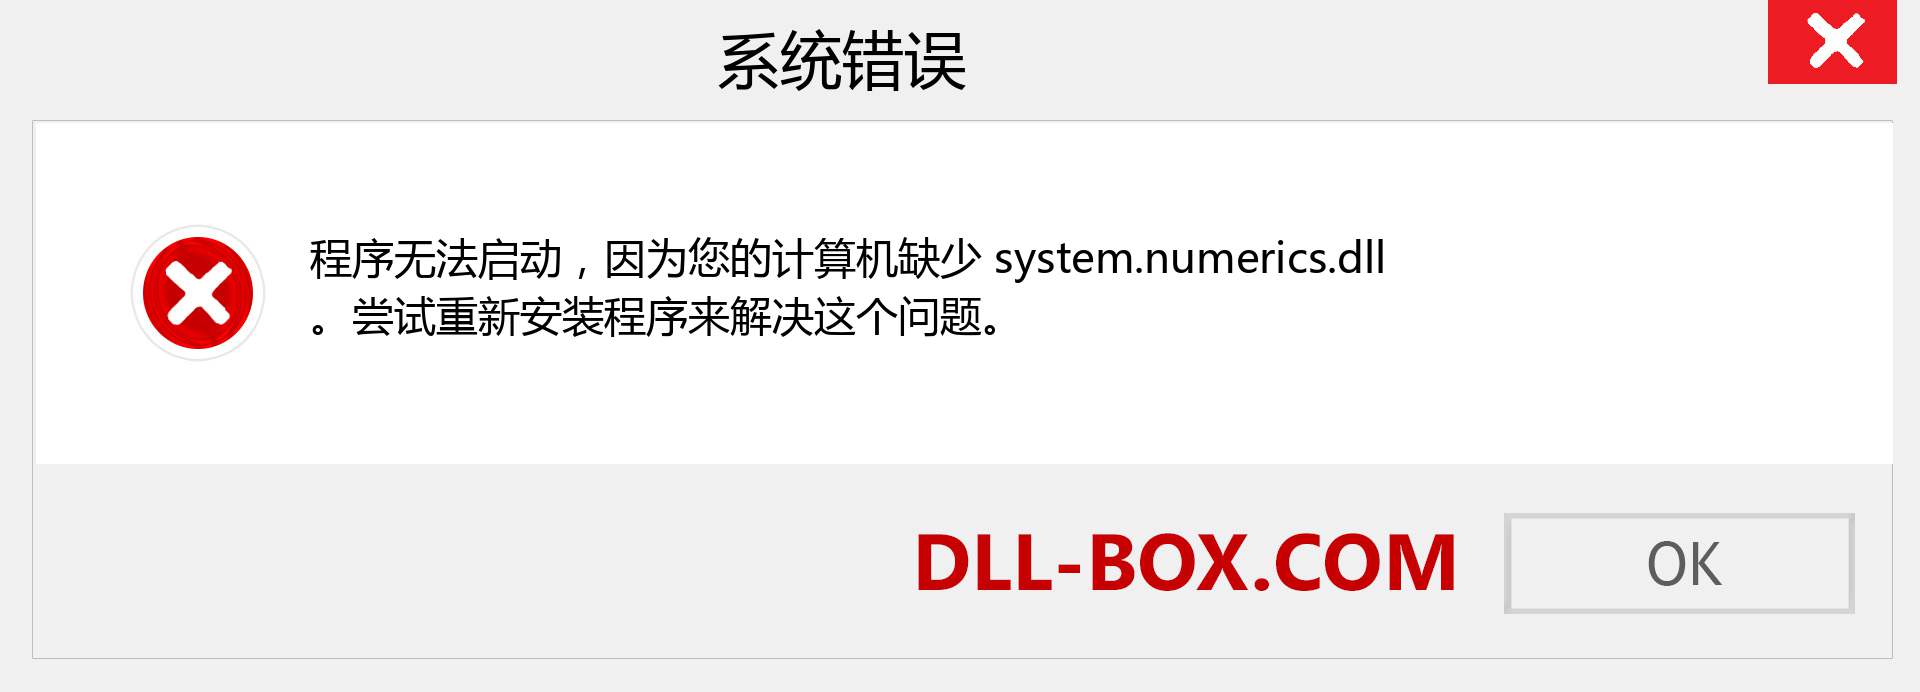 system.numerics.dll 文件丢失？。 适用于 Windows 7、8、10 的下载 - 修复 Windows、照片、图像上的 system.numerics dll 丢失错误